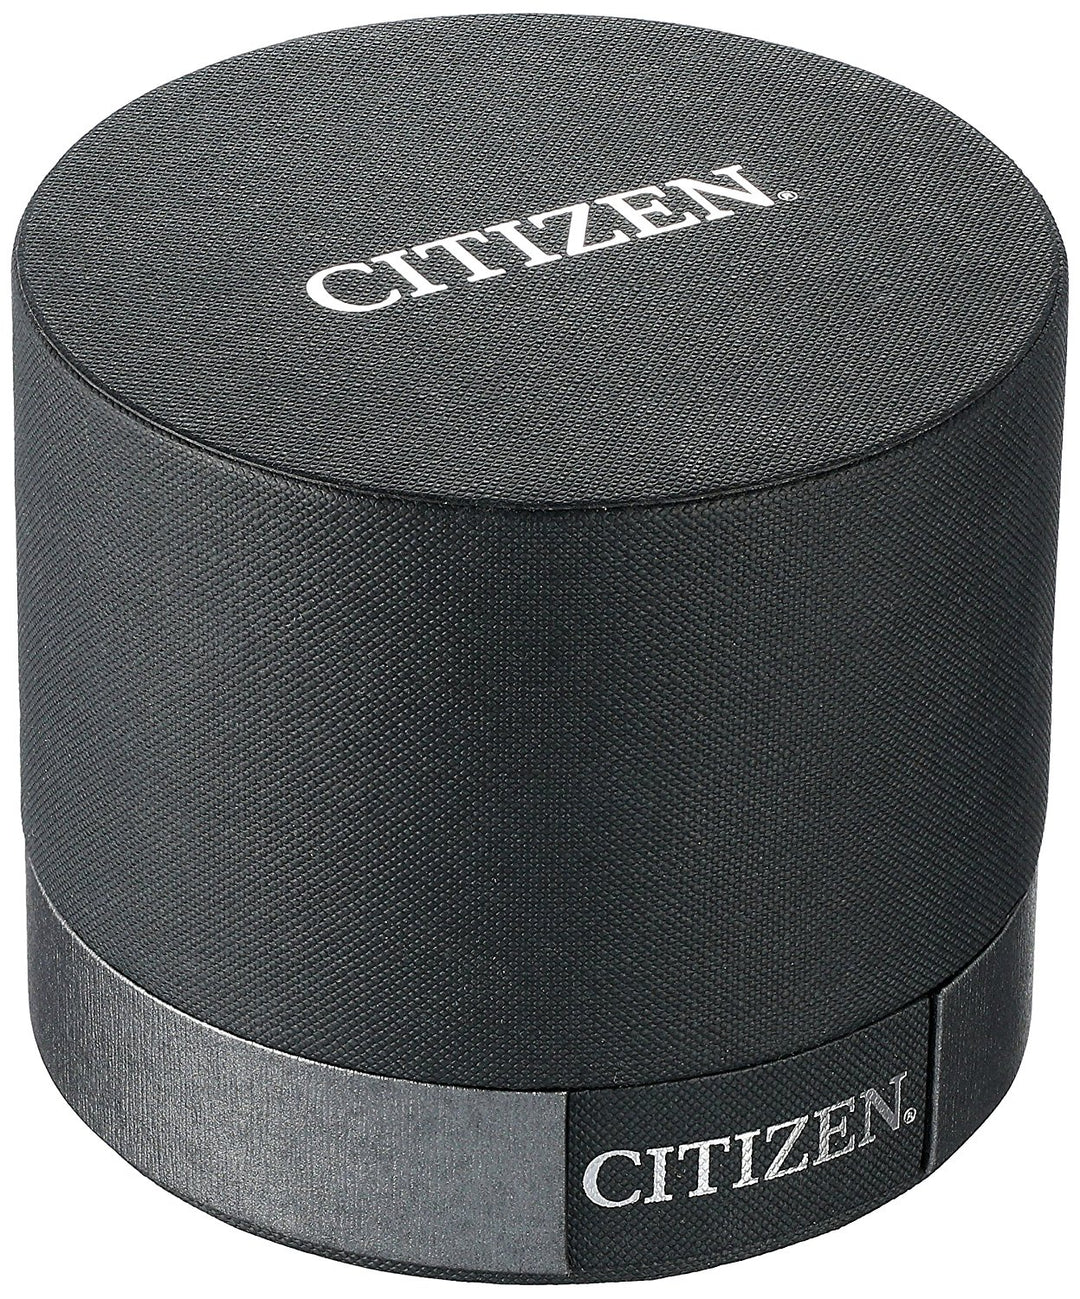 citizen watch model  ED8090-53D - Watch Universe Int 